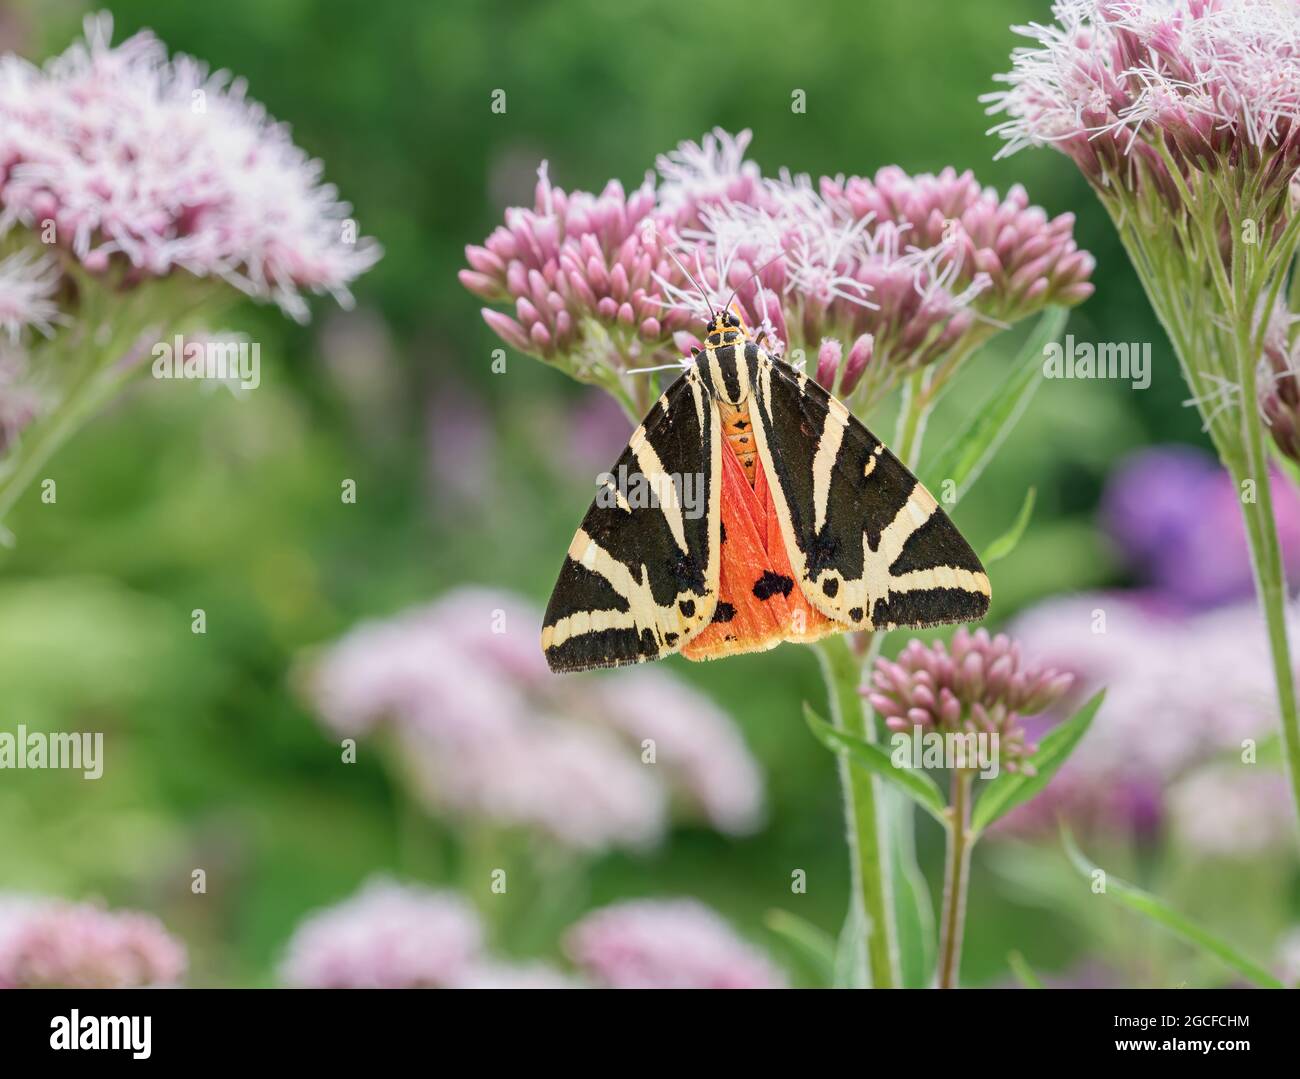 Euplagia quadripunctaria, tigre de Jersey, papillon de jour qui se nourrit des fleurs Eupatorium cannabinum, chanvre-agrimony, dans un jardin, Allemagne Banque D'Images